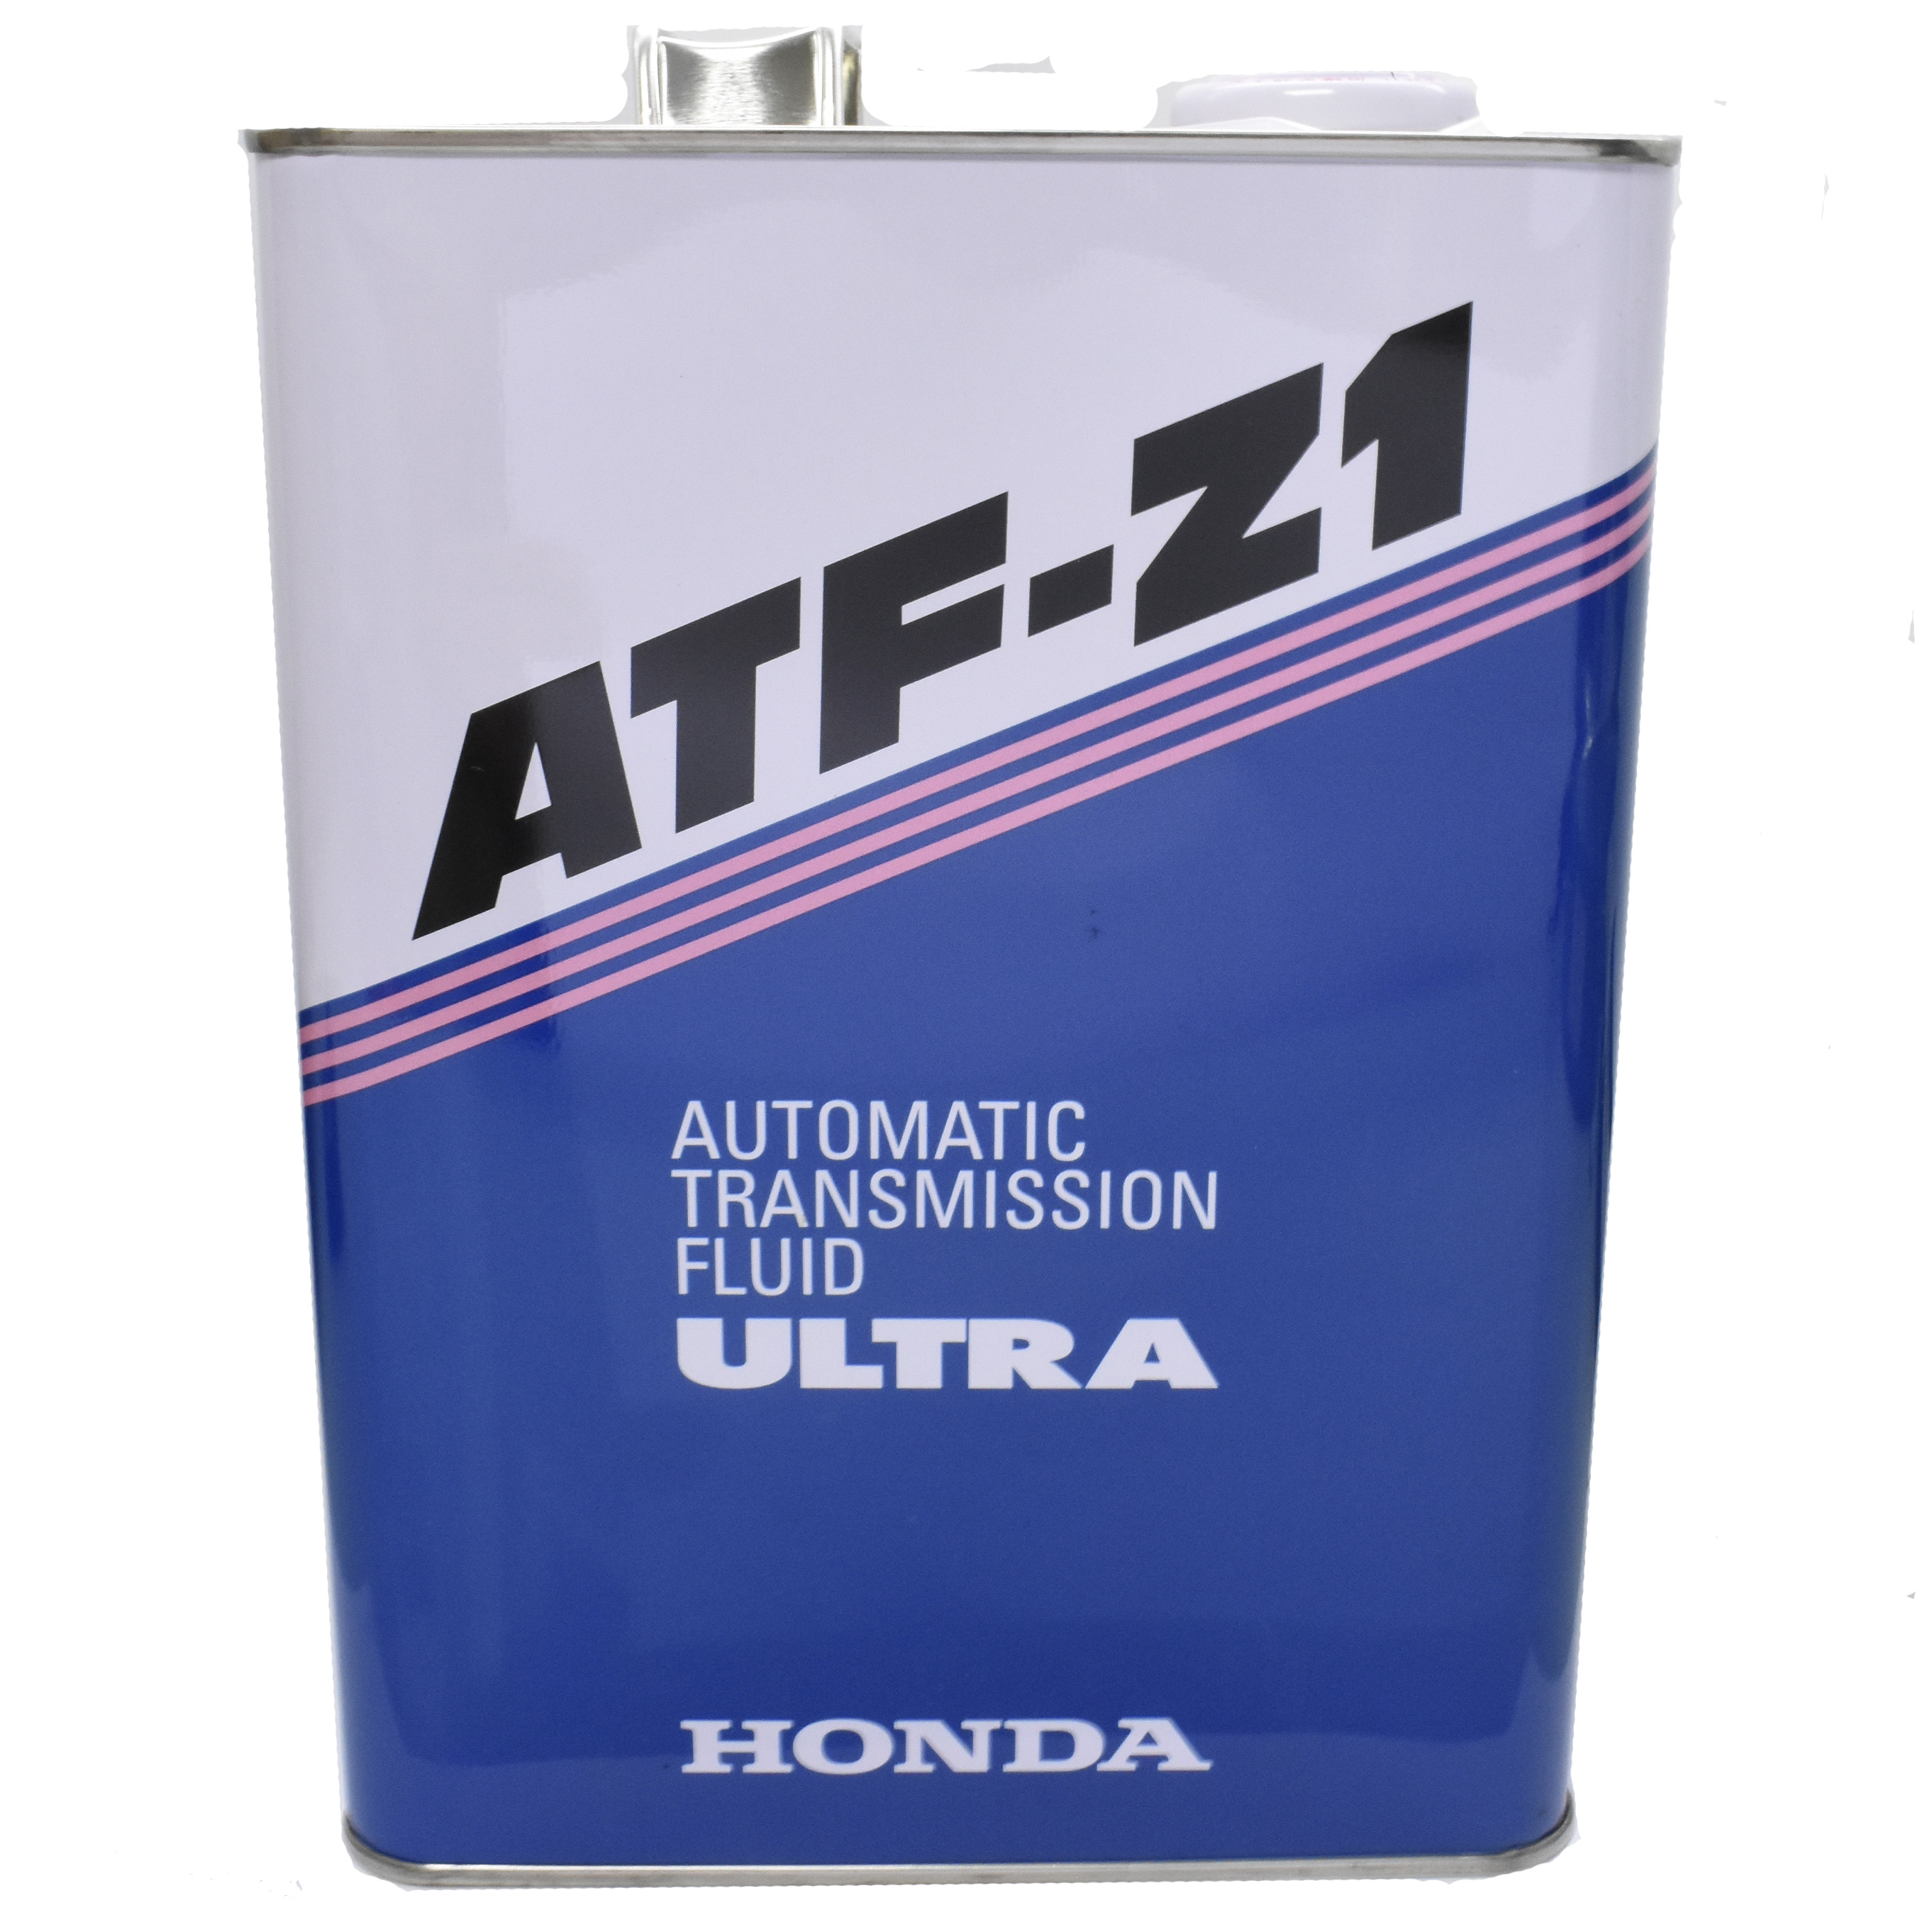 Honda ultra atf. Хонда ATF z1. Honda Ultra ATF-z1. Honda ATF Z-1. 08266-99904 Honda ATF Z-1.